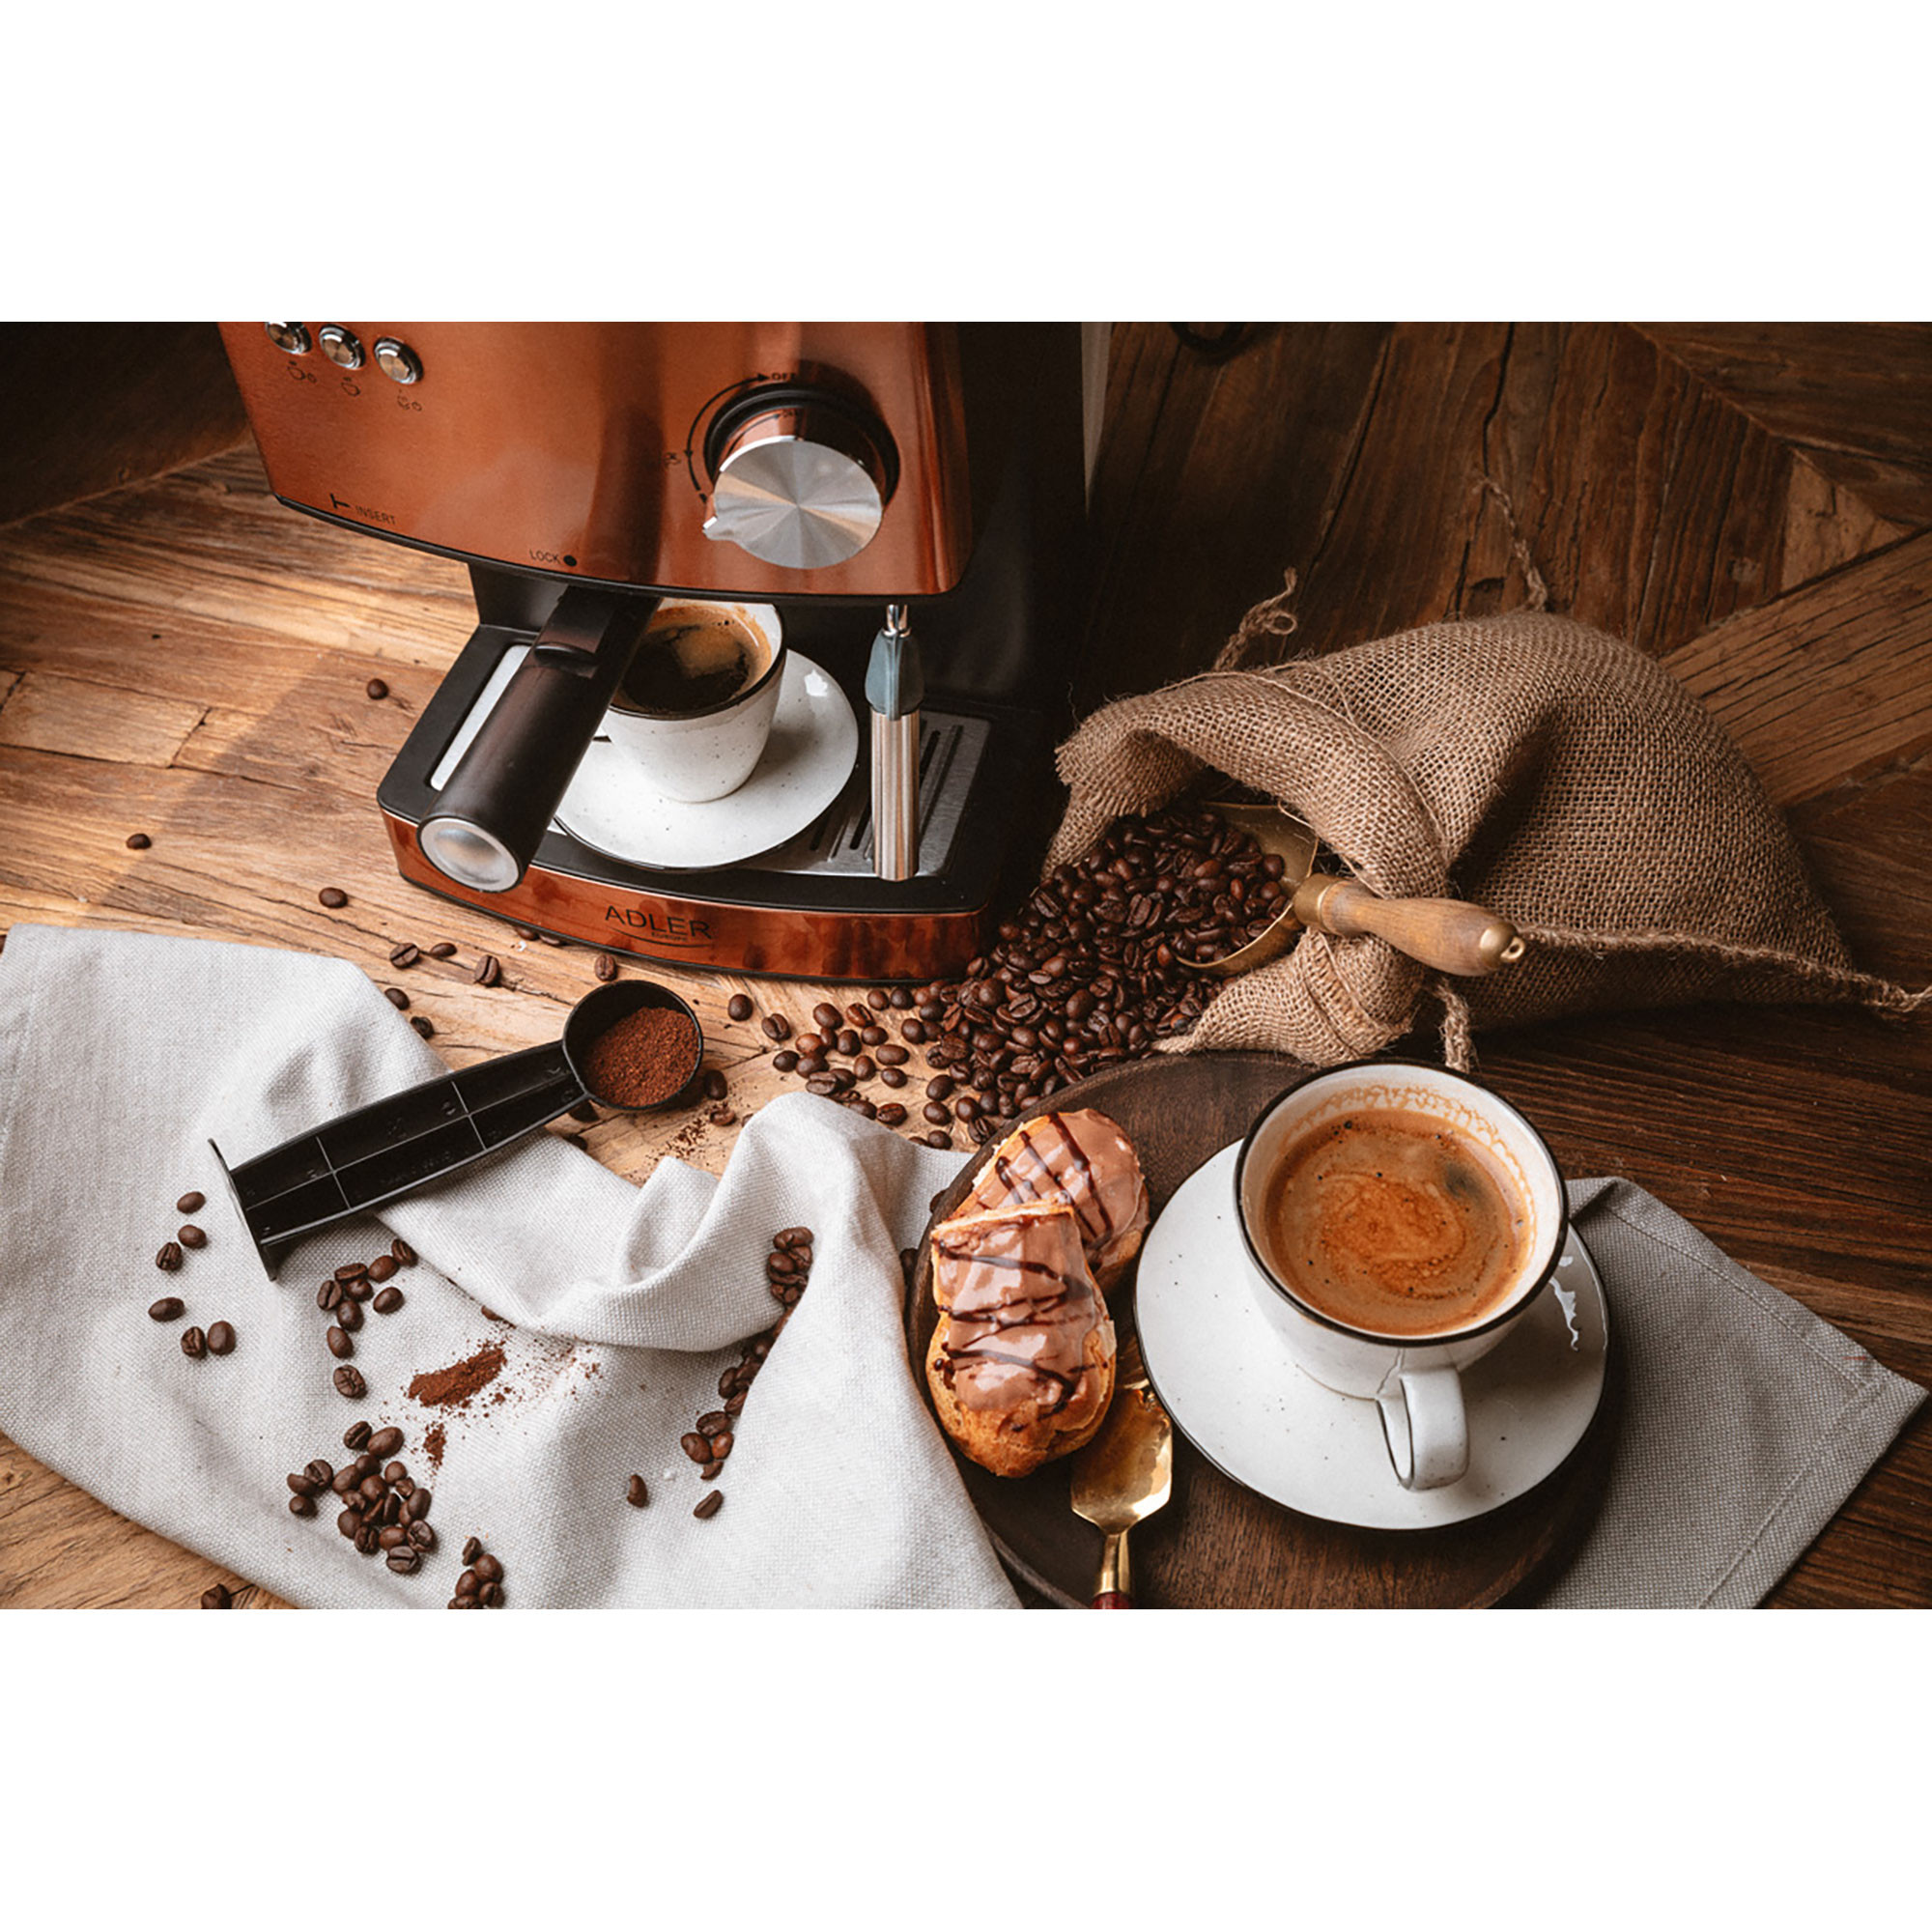 Cafetera espresso manual 15 bares 1,6 l, braz adler ad 4404cr cobre 850w